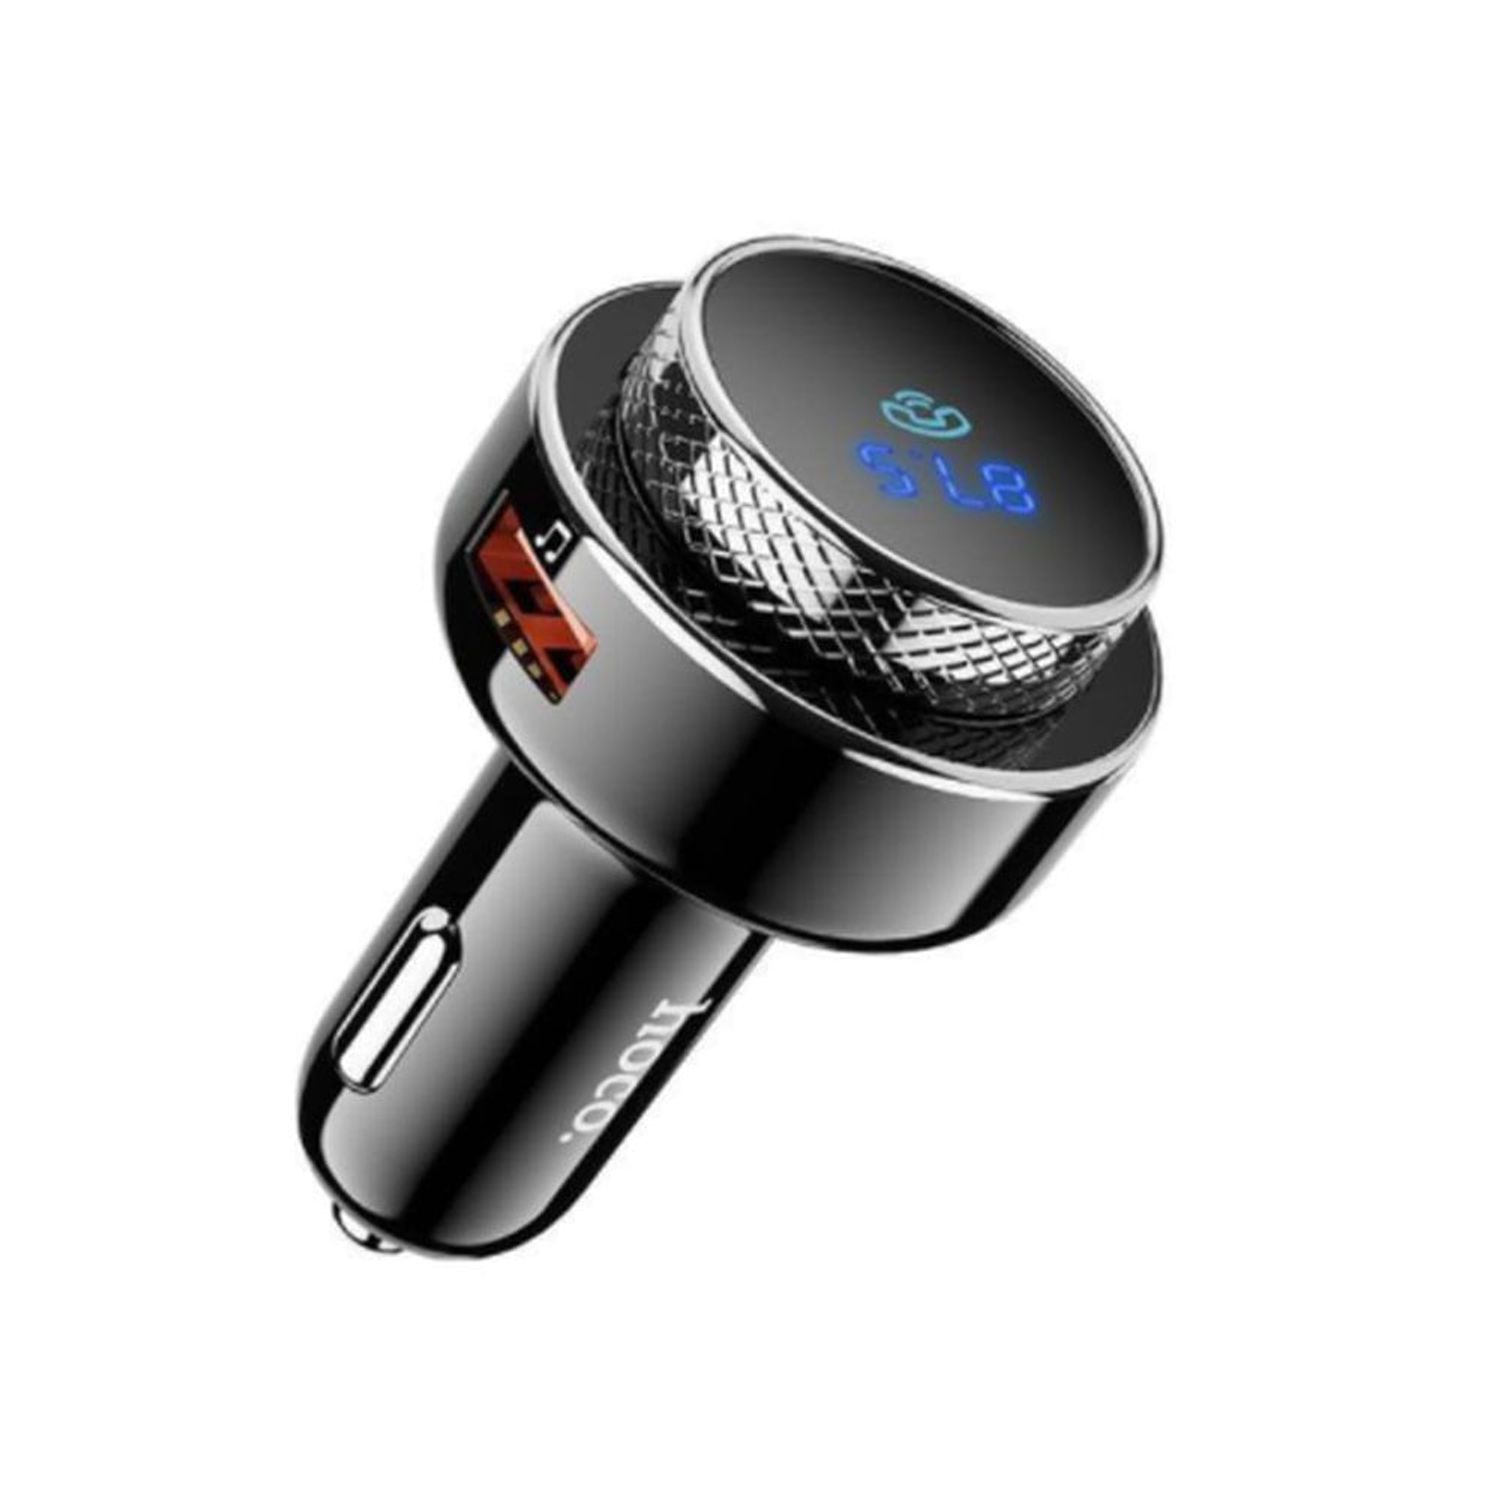 Transmisor FM Bluetooth MP3 para coche con cargador 6,2A negro 